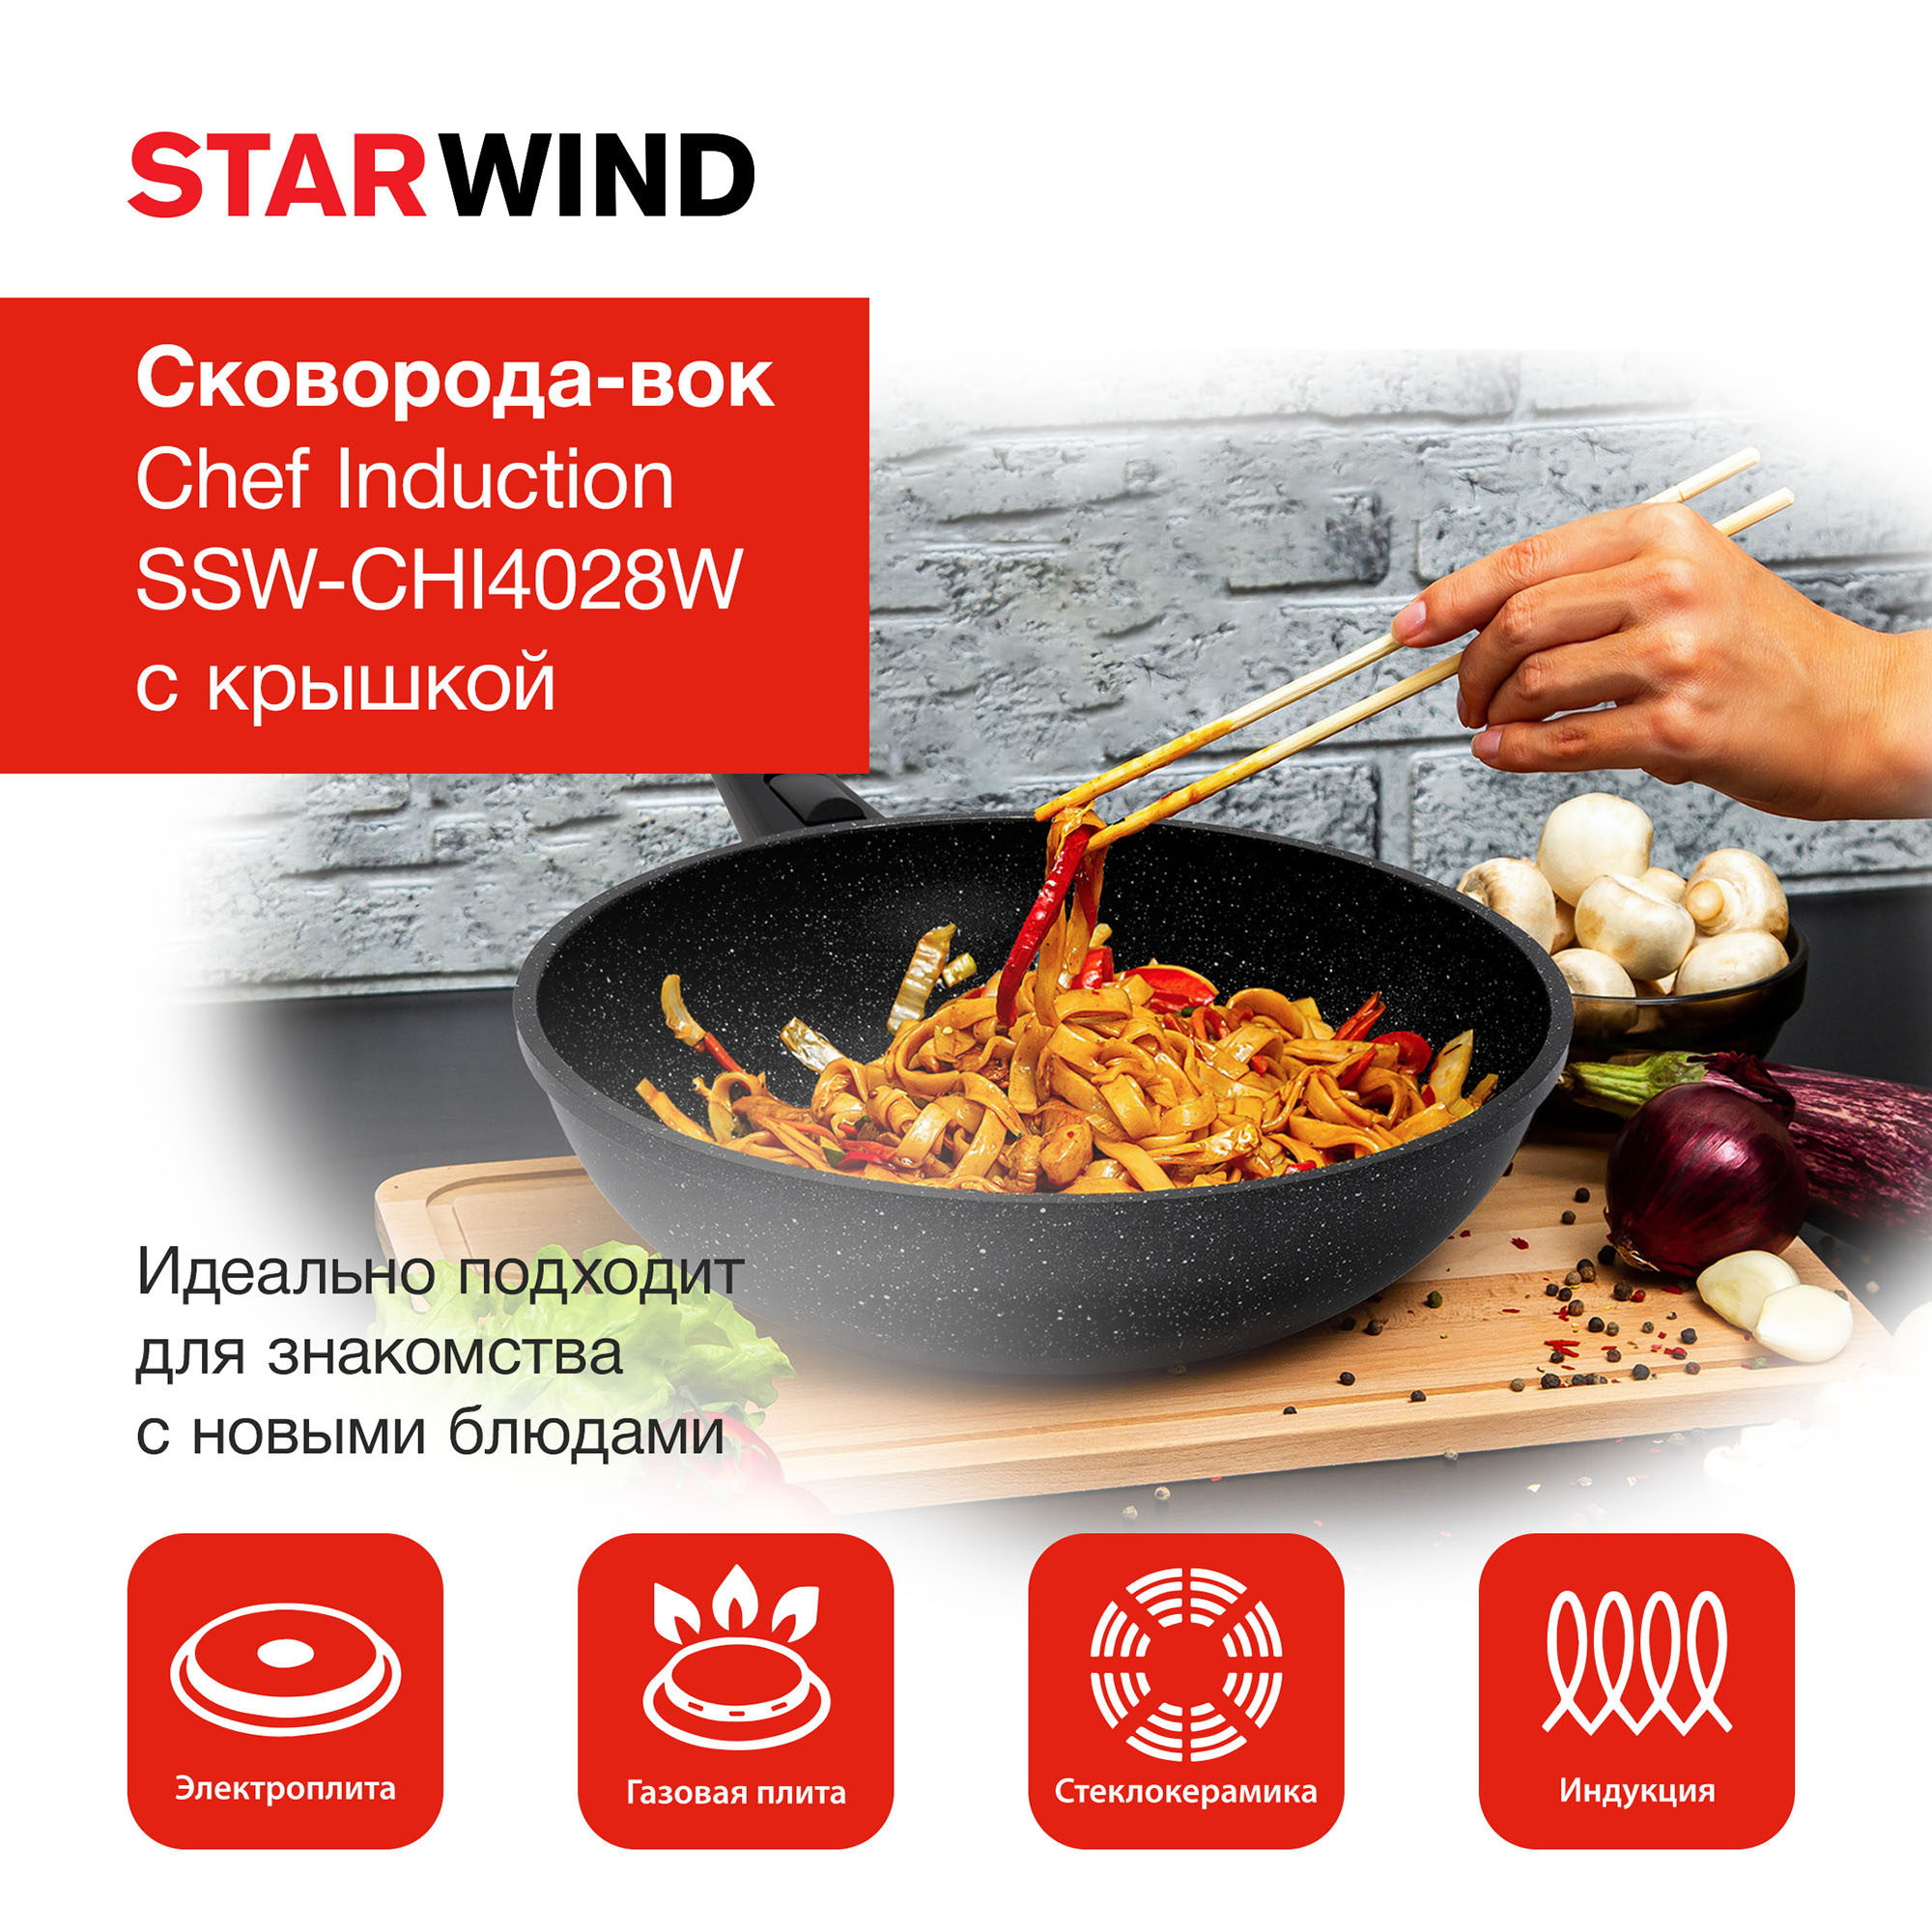 Сковорода ВОК (WOK) Starwind Chef Induction SW-CHI4028W, 28см, черный, Pfluon покрытие, с крышкой (sw-chi4028w/кор) от магазина Старвинд